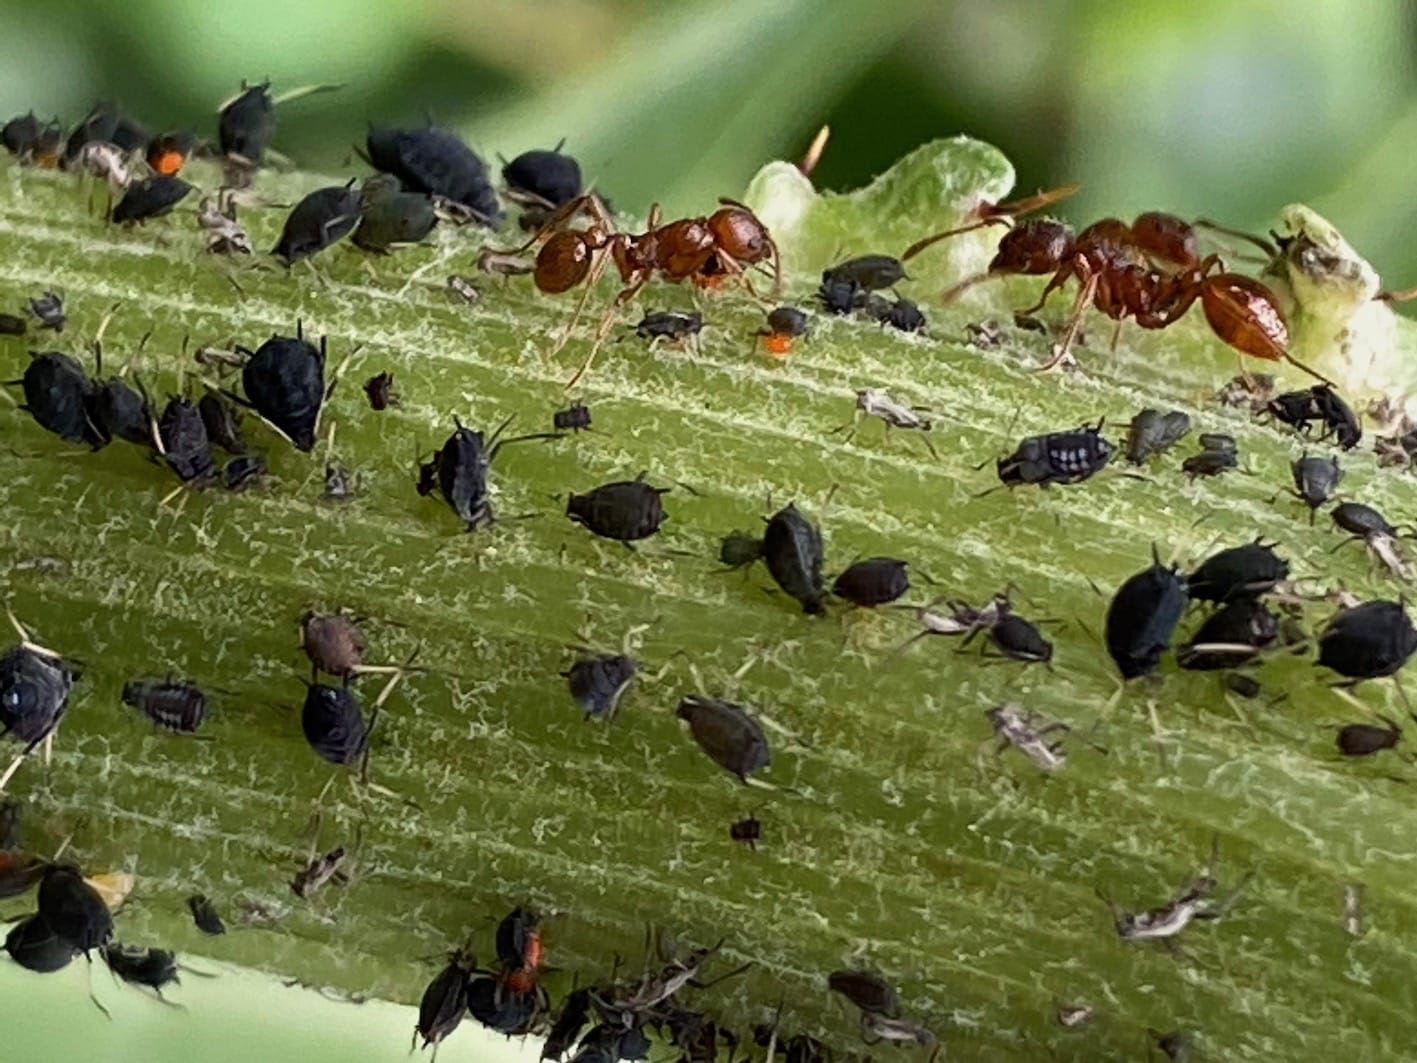 Les fourmis nettoyant le caca des pucerons